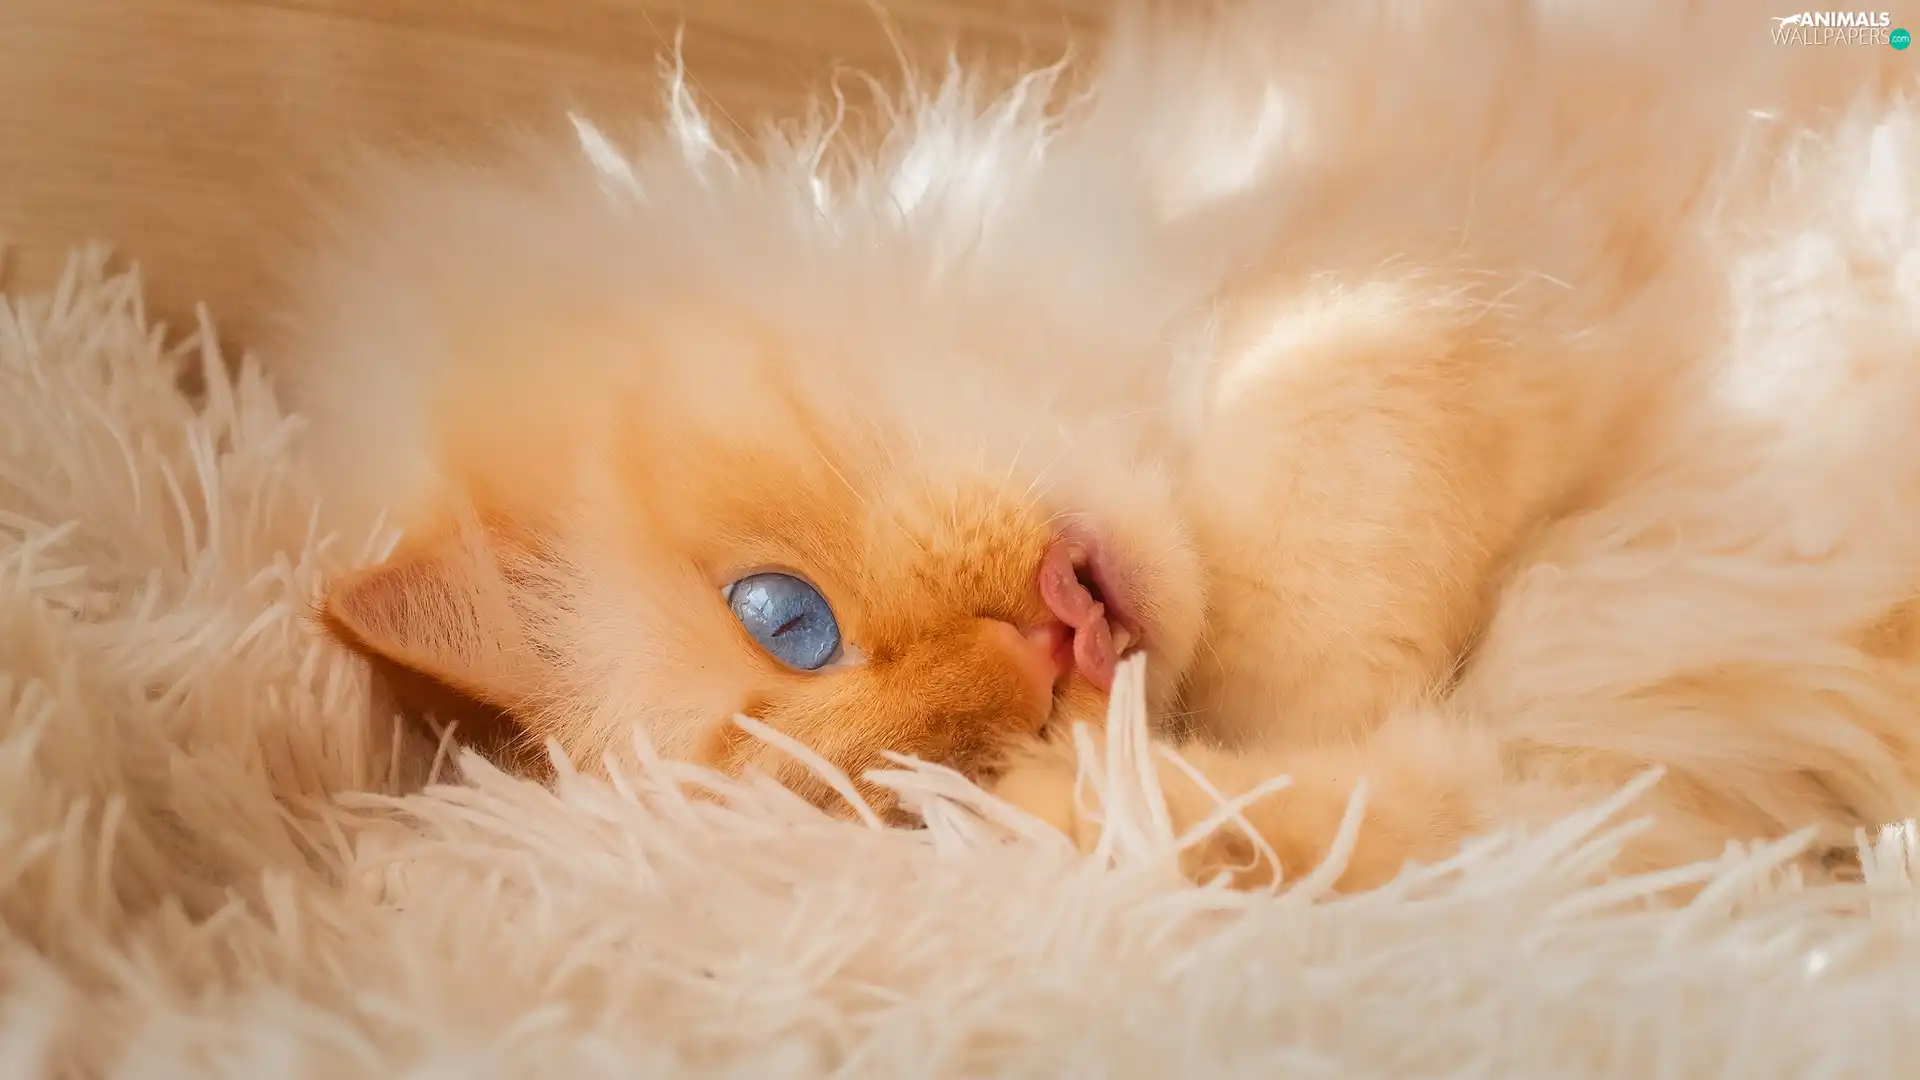 Tounge, coverlet, Reddish, Blue Eyed, cat